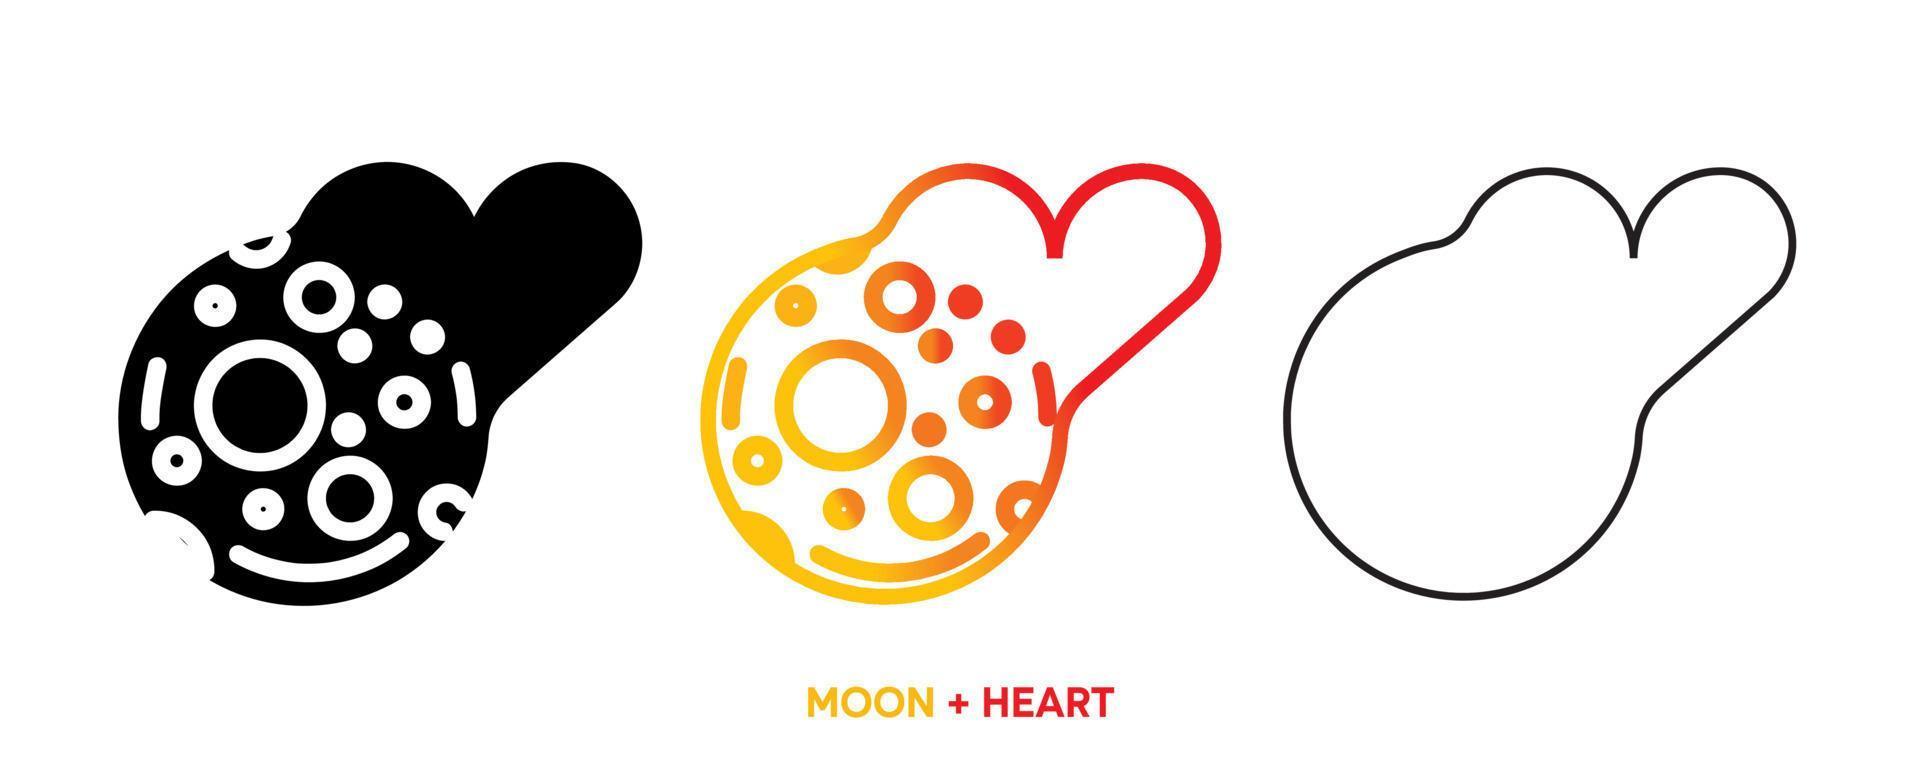 ligne d'icône de coeur avec la lune. couleur, silhouette et jeu de lignes. vecteur